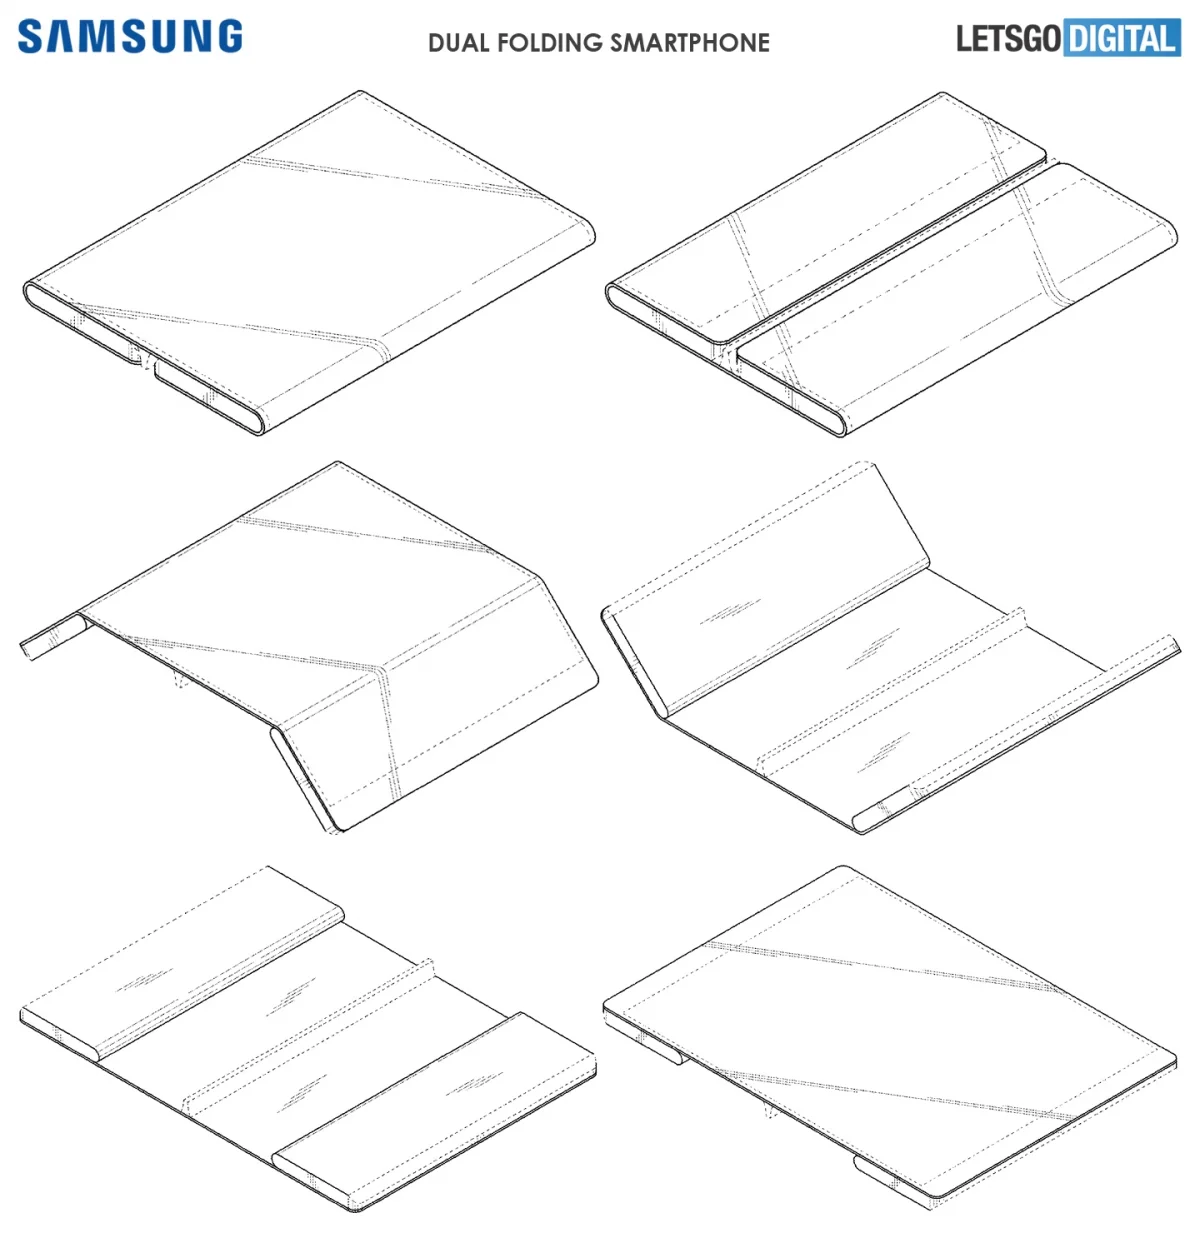 Слухи: новый смартфон Samsung будет складываться в двух местах, как и у Xiaomi - фото 4